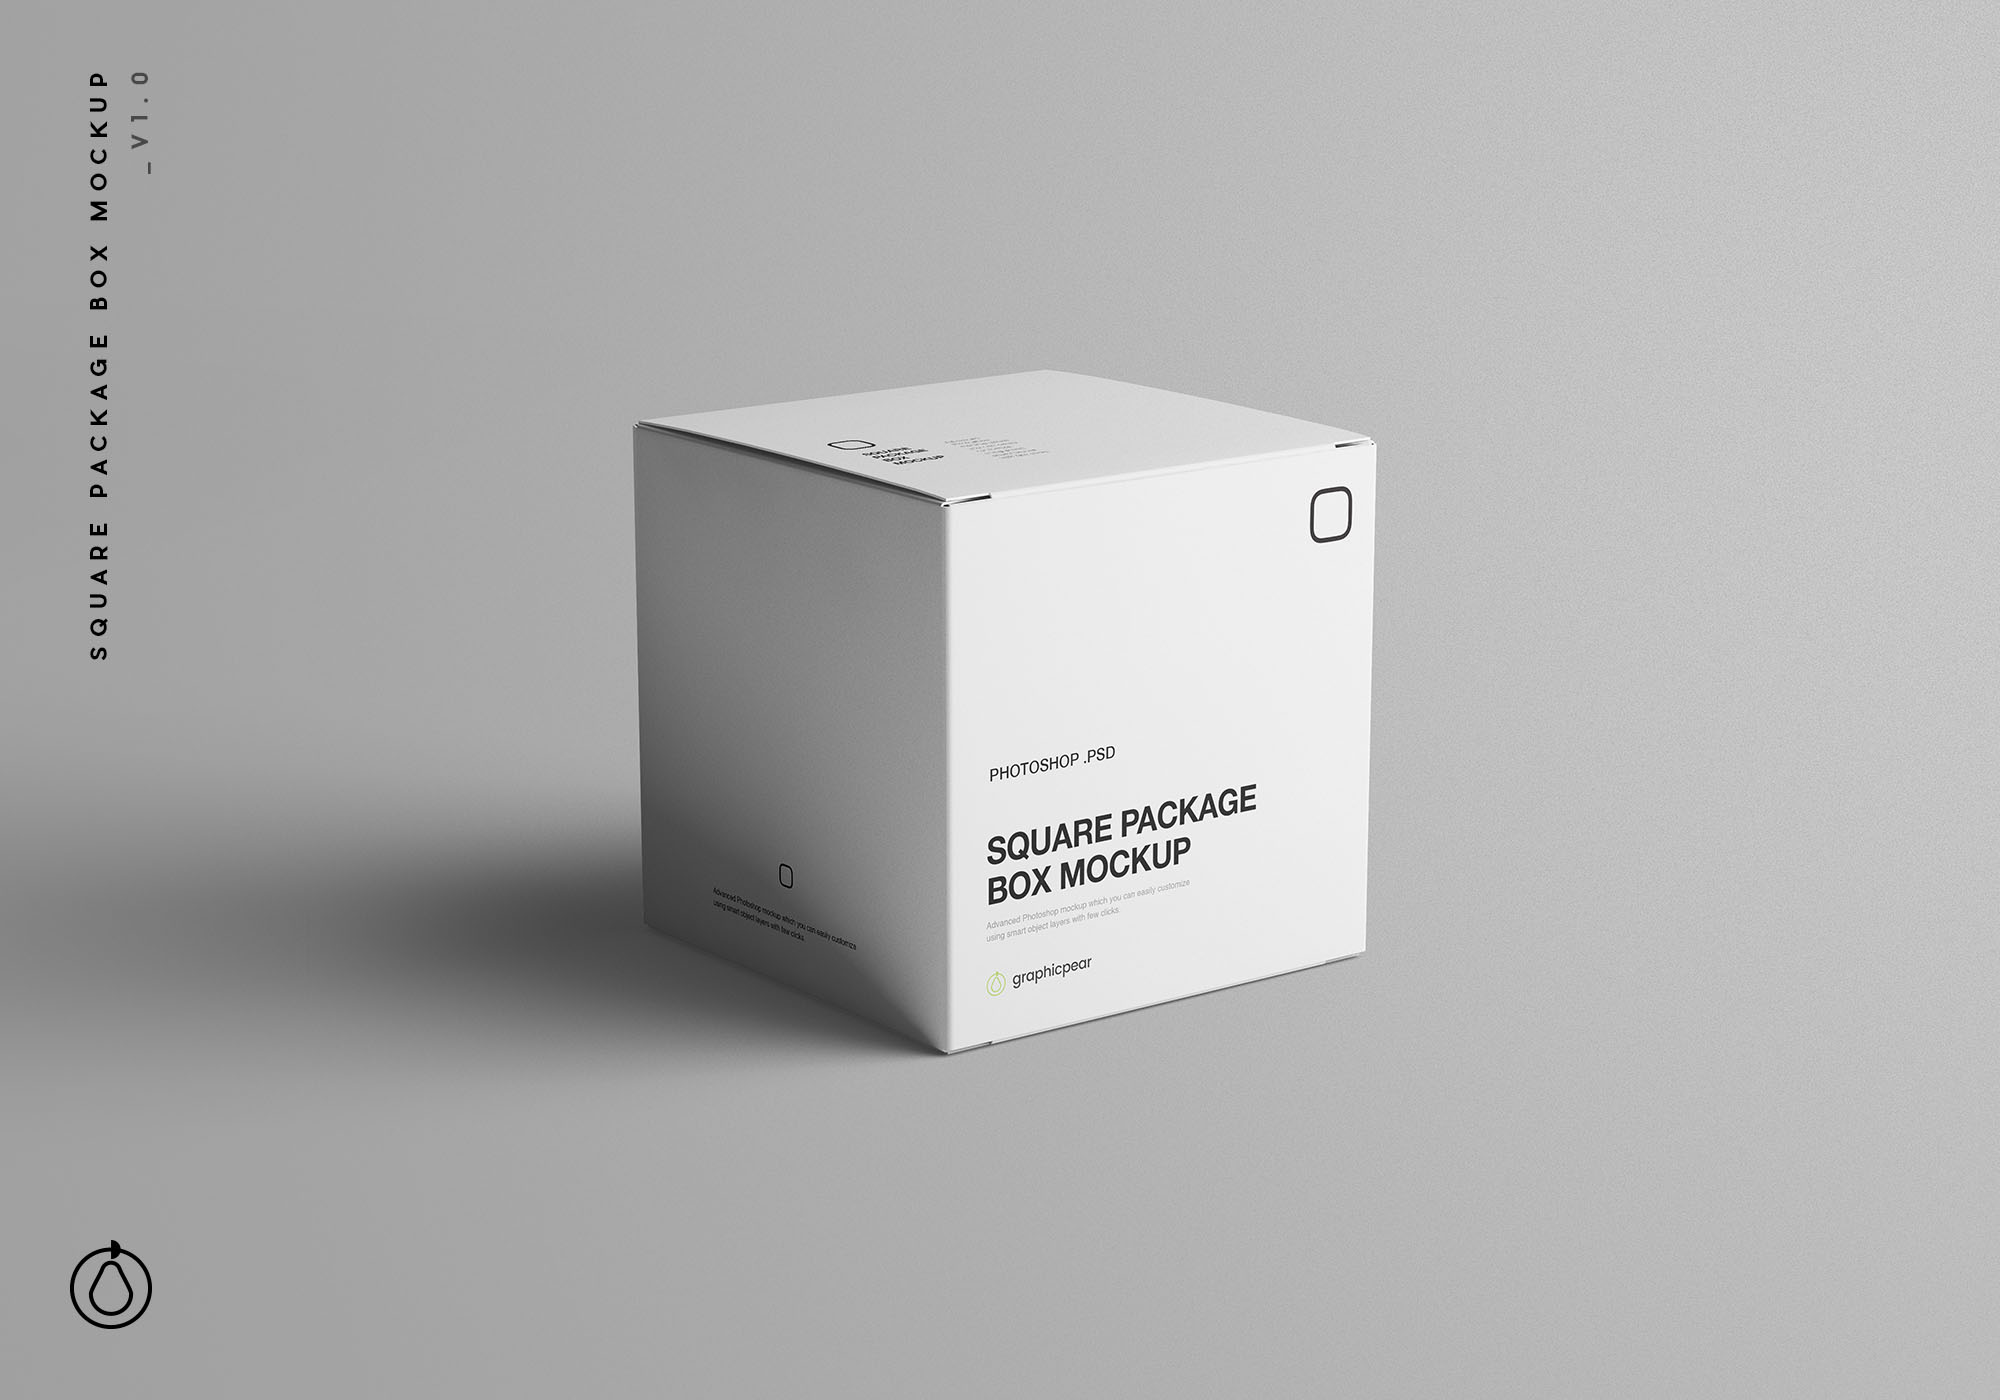 方形包装盒设计效果图样机模板 Square Package Box Mockup插图